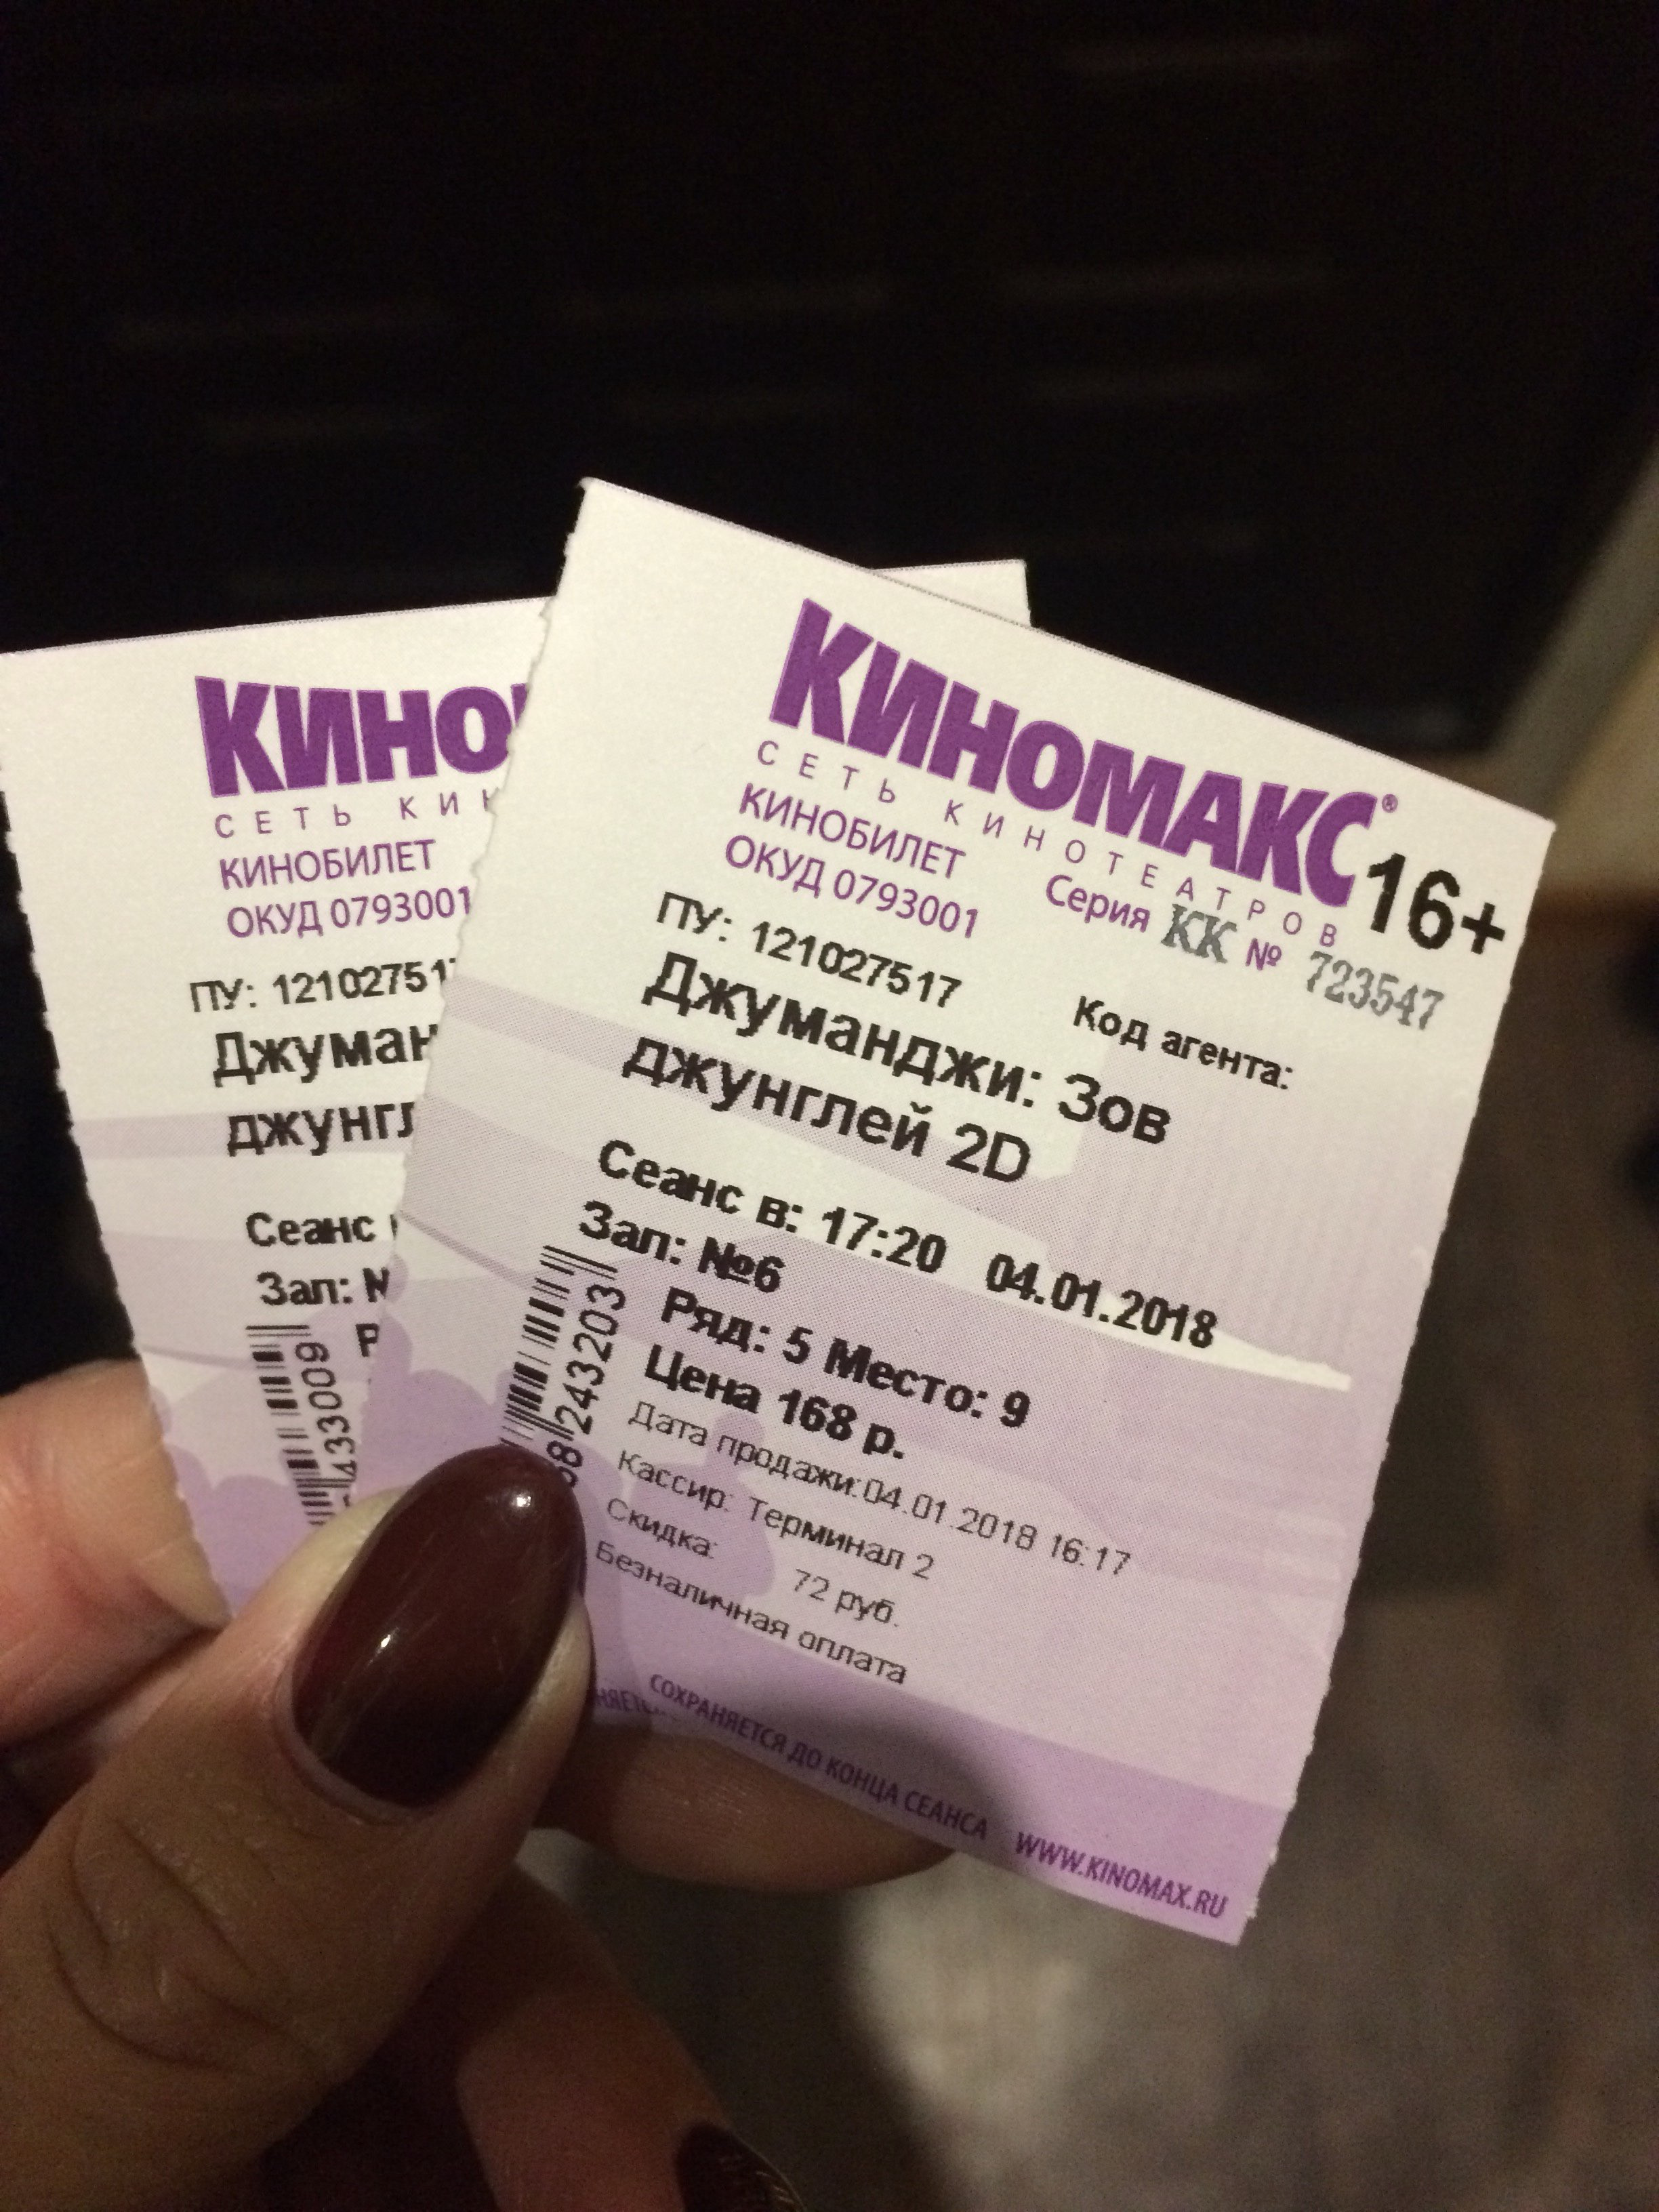 Киномакс планета красноярск билеты. Билет Киномакс. Билет кинотеатр Киномакс. Киномакс-Планета Красноярск.